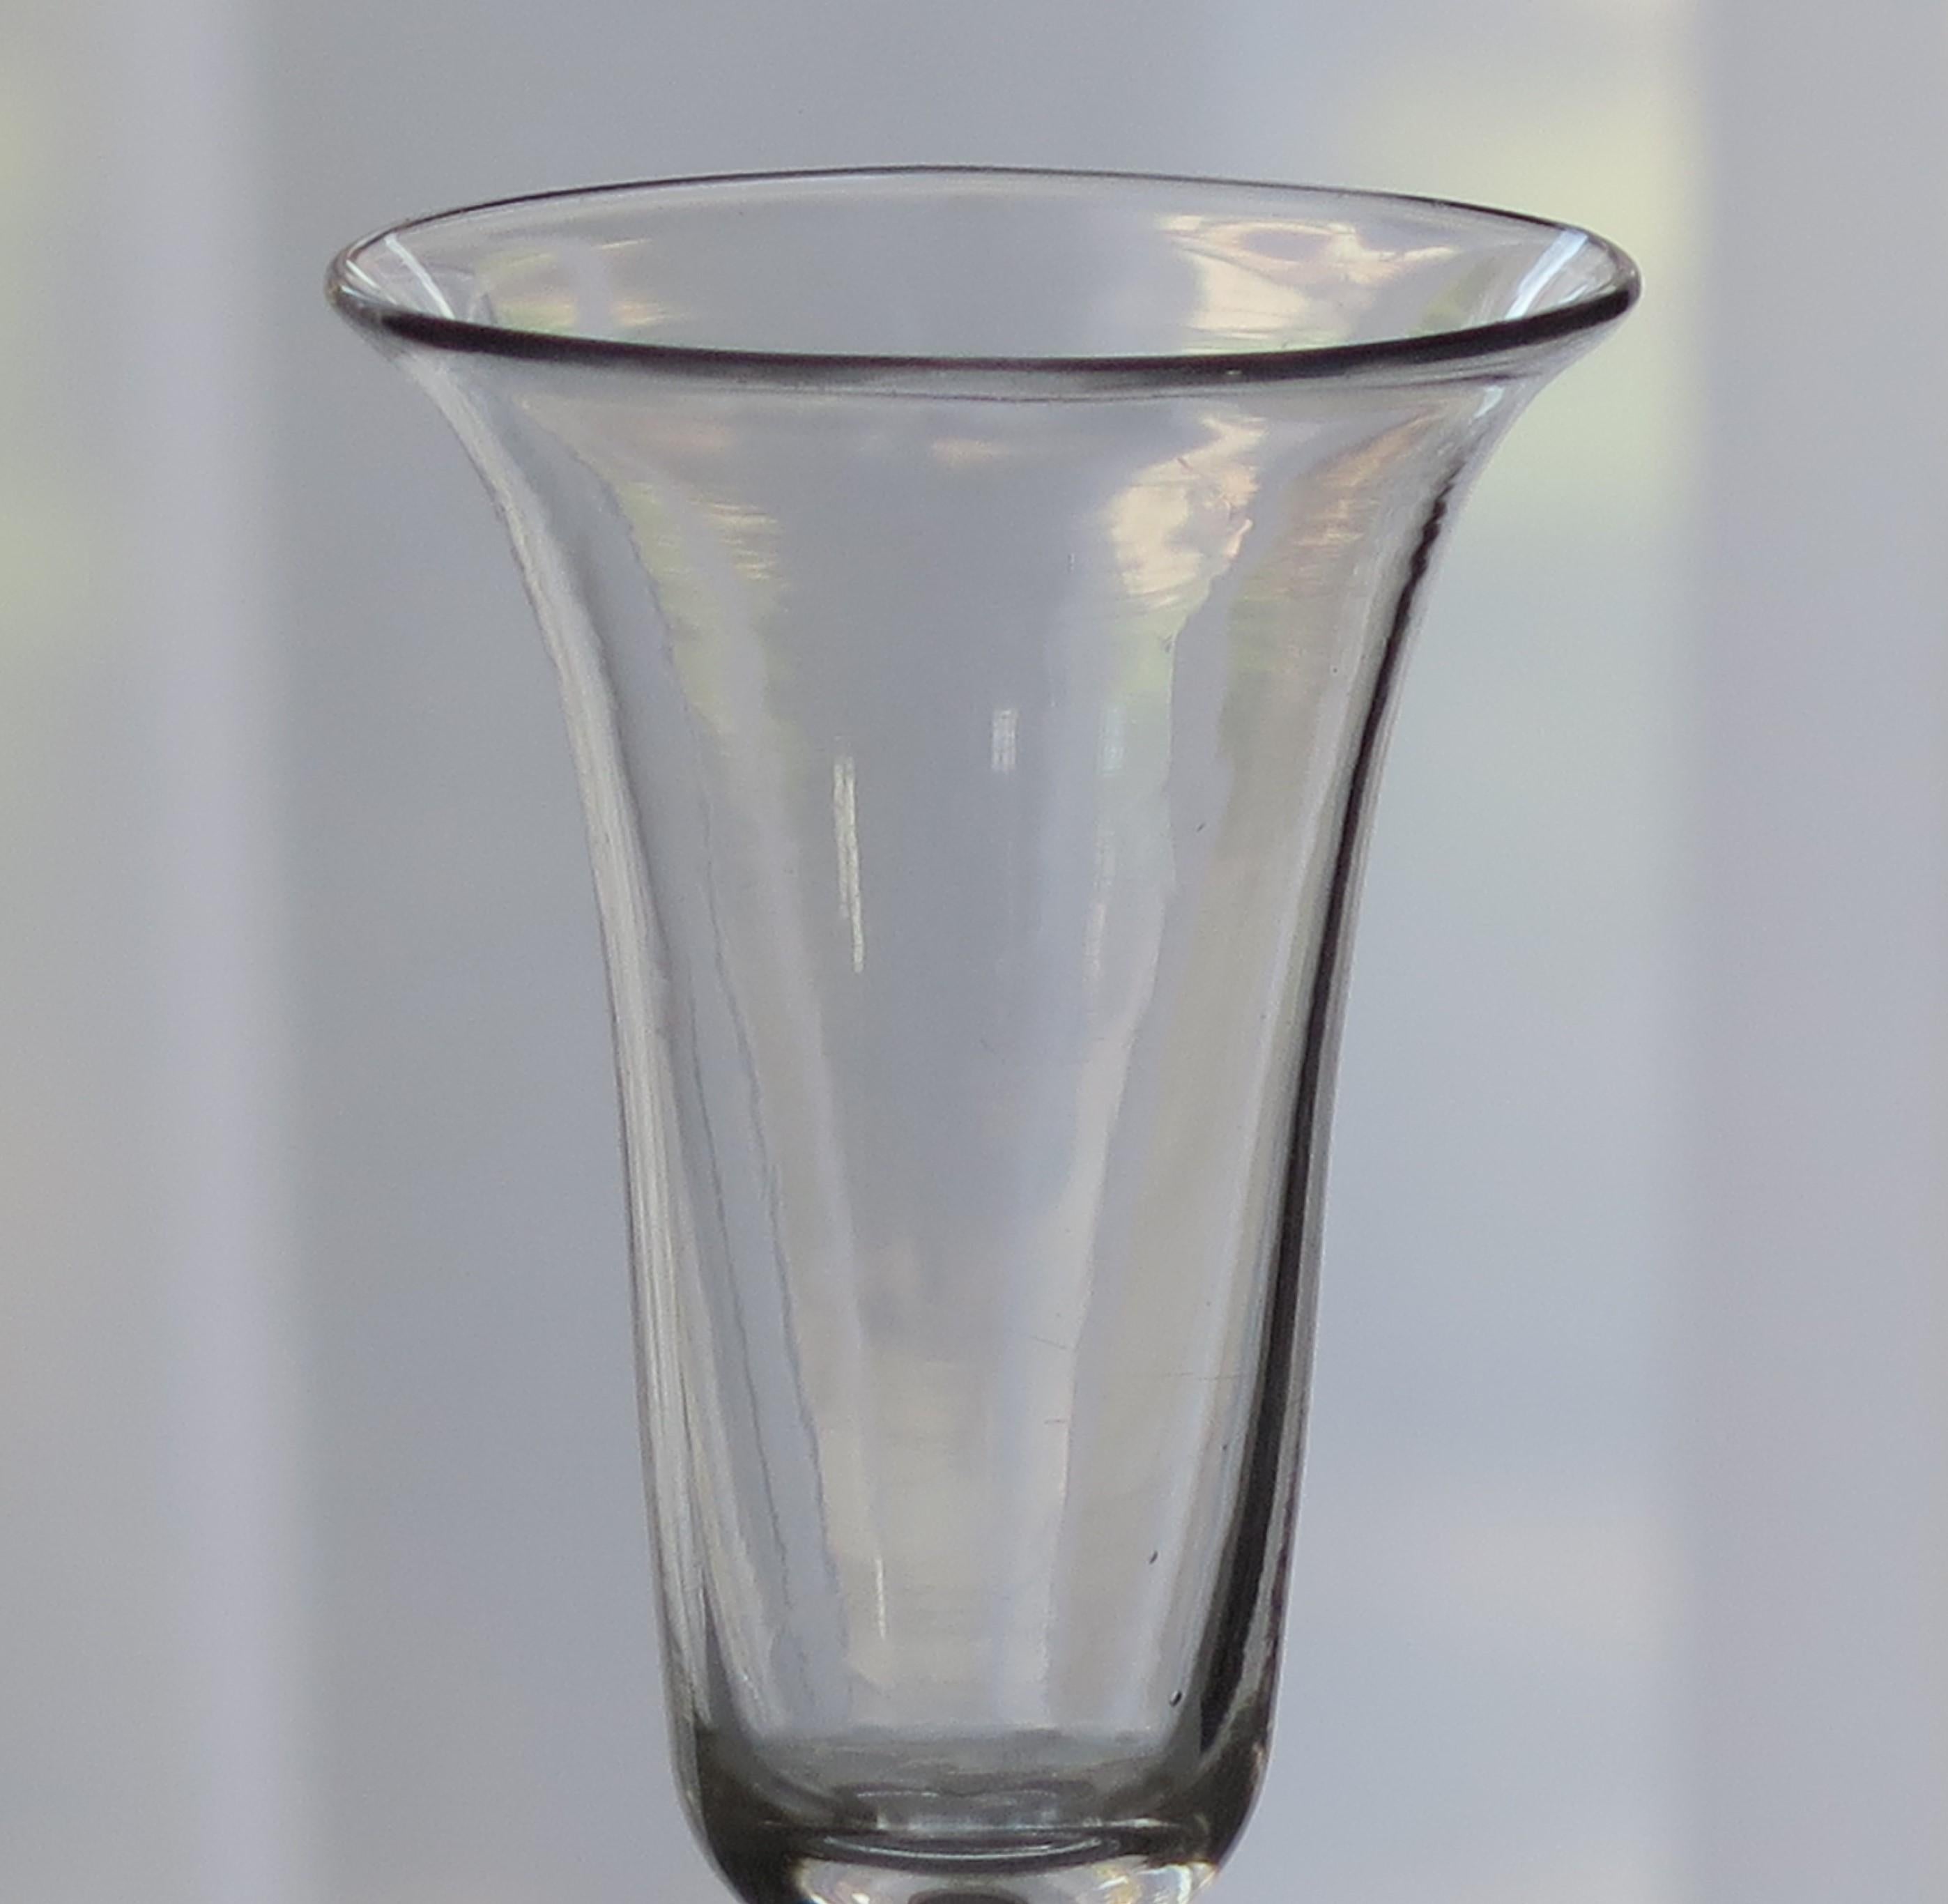 Es handelt sich um ein sehr gutes mundgeblasenes englisches Jelly-Glas aus dem letzten Viertel des 18. Jahrhunderts, um 1780.

Diese Gläser sind sehr sammelwürdig. Es ist aus englischem Bleiglas gefertigt, das relativ schwer ist und eine sanfte